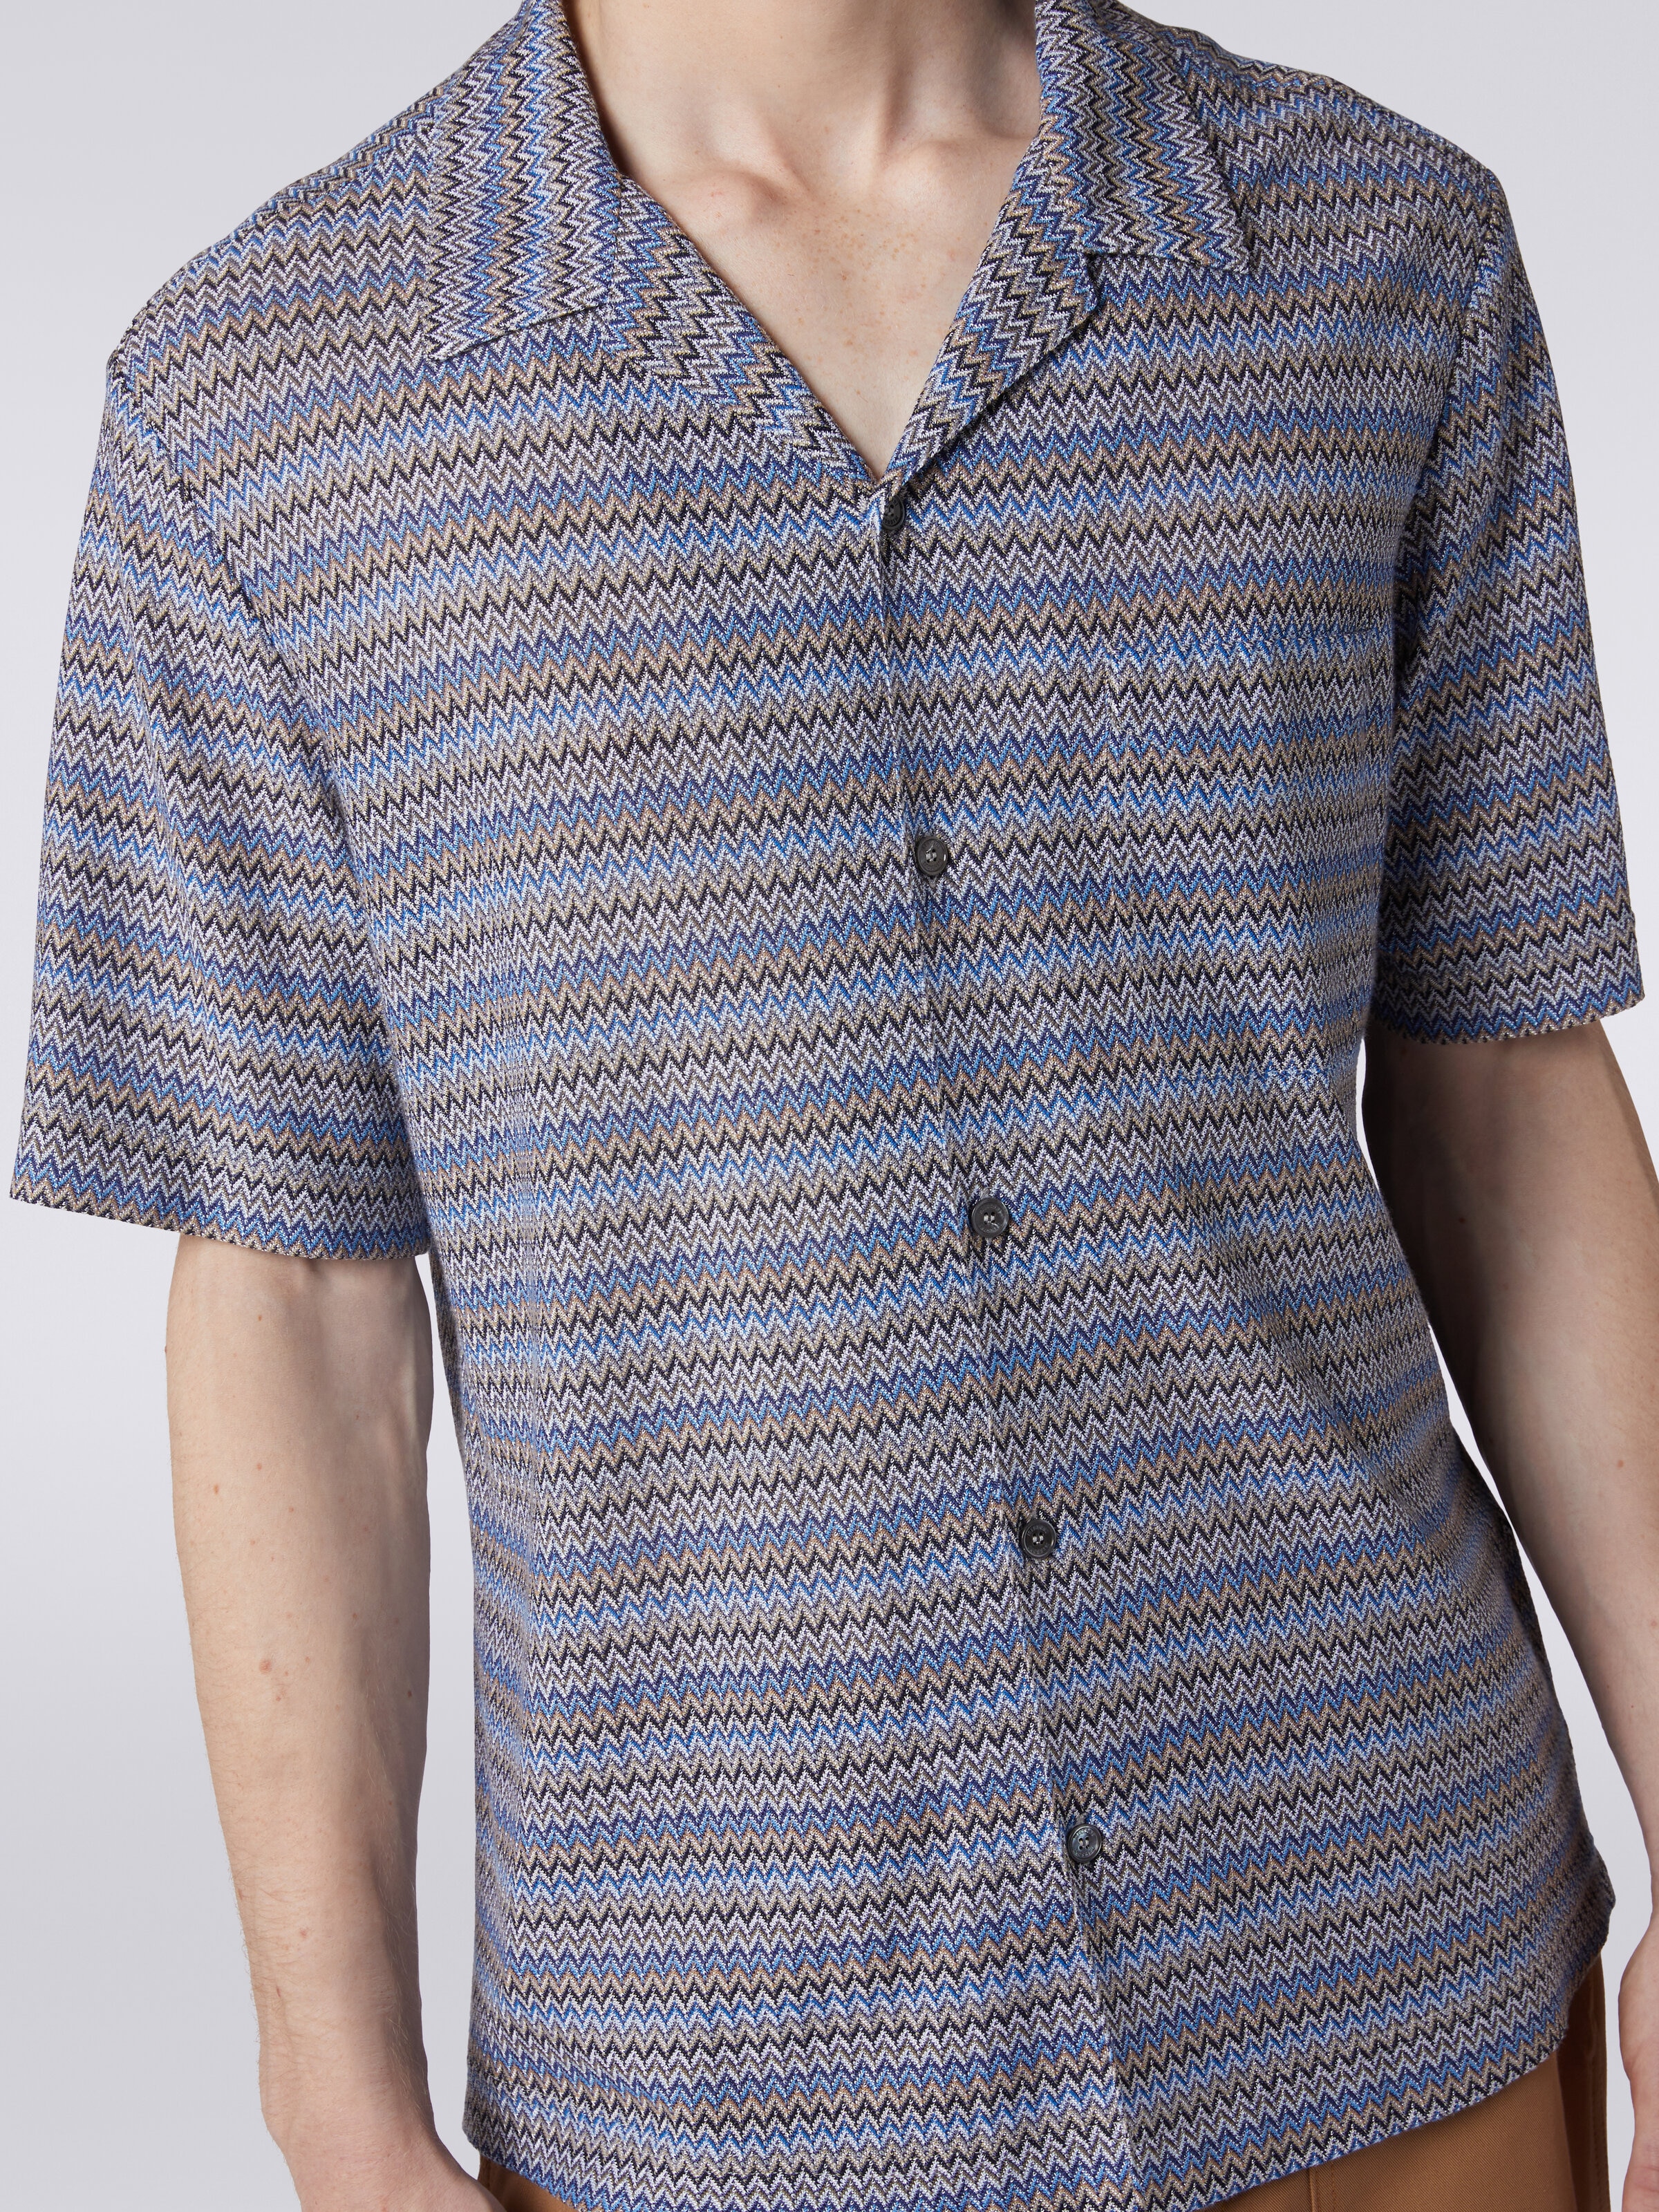 Kurzärmeliges Hemd im Bowling-Stil mit Zickzackmuster, Blau - 4